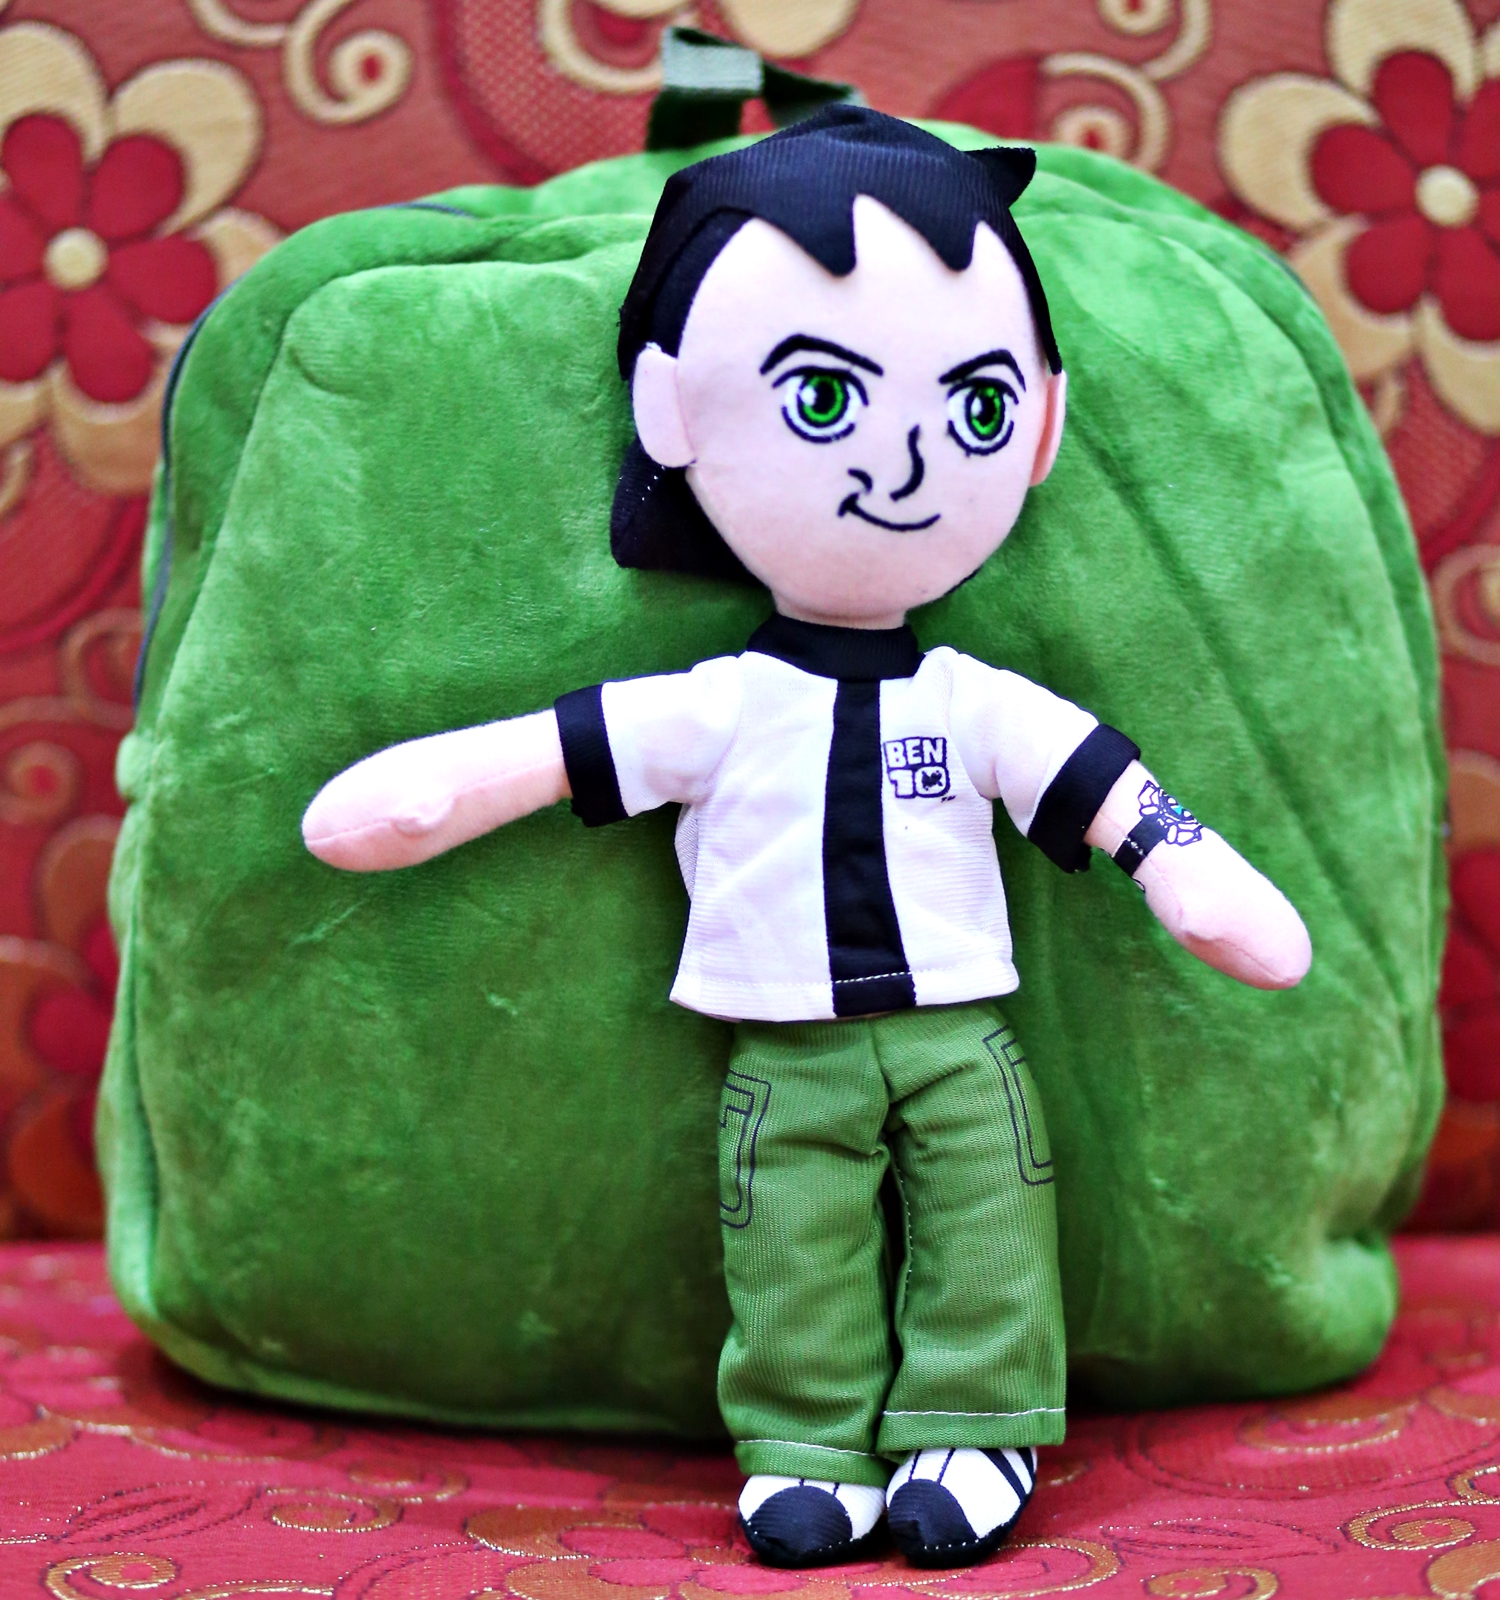 Ben Ten Plush Backpacks School Bag Plush Toys Stuffed Cartoon Character Birthday Gift For Children Kids Toys